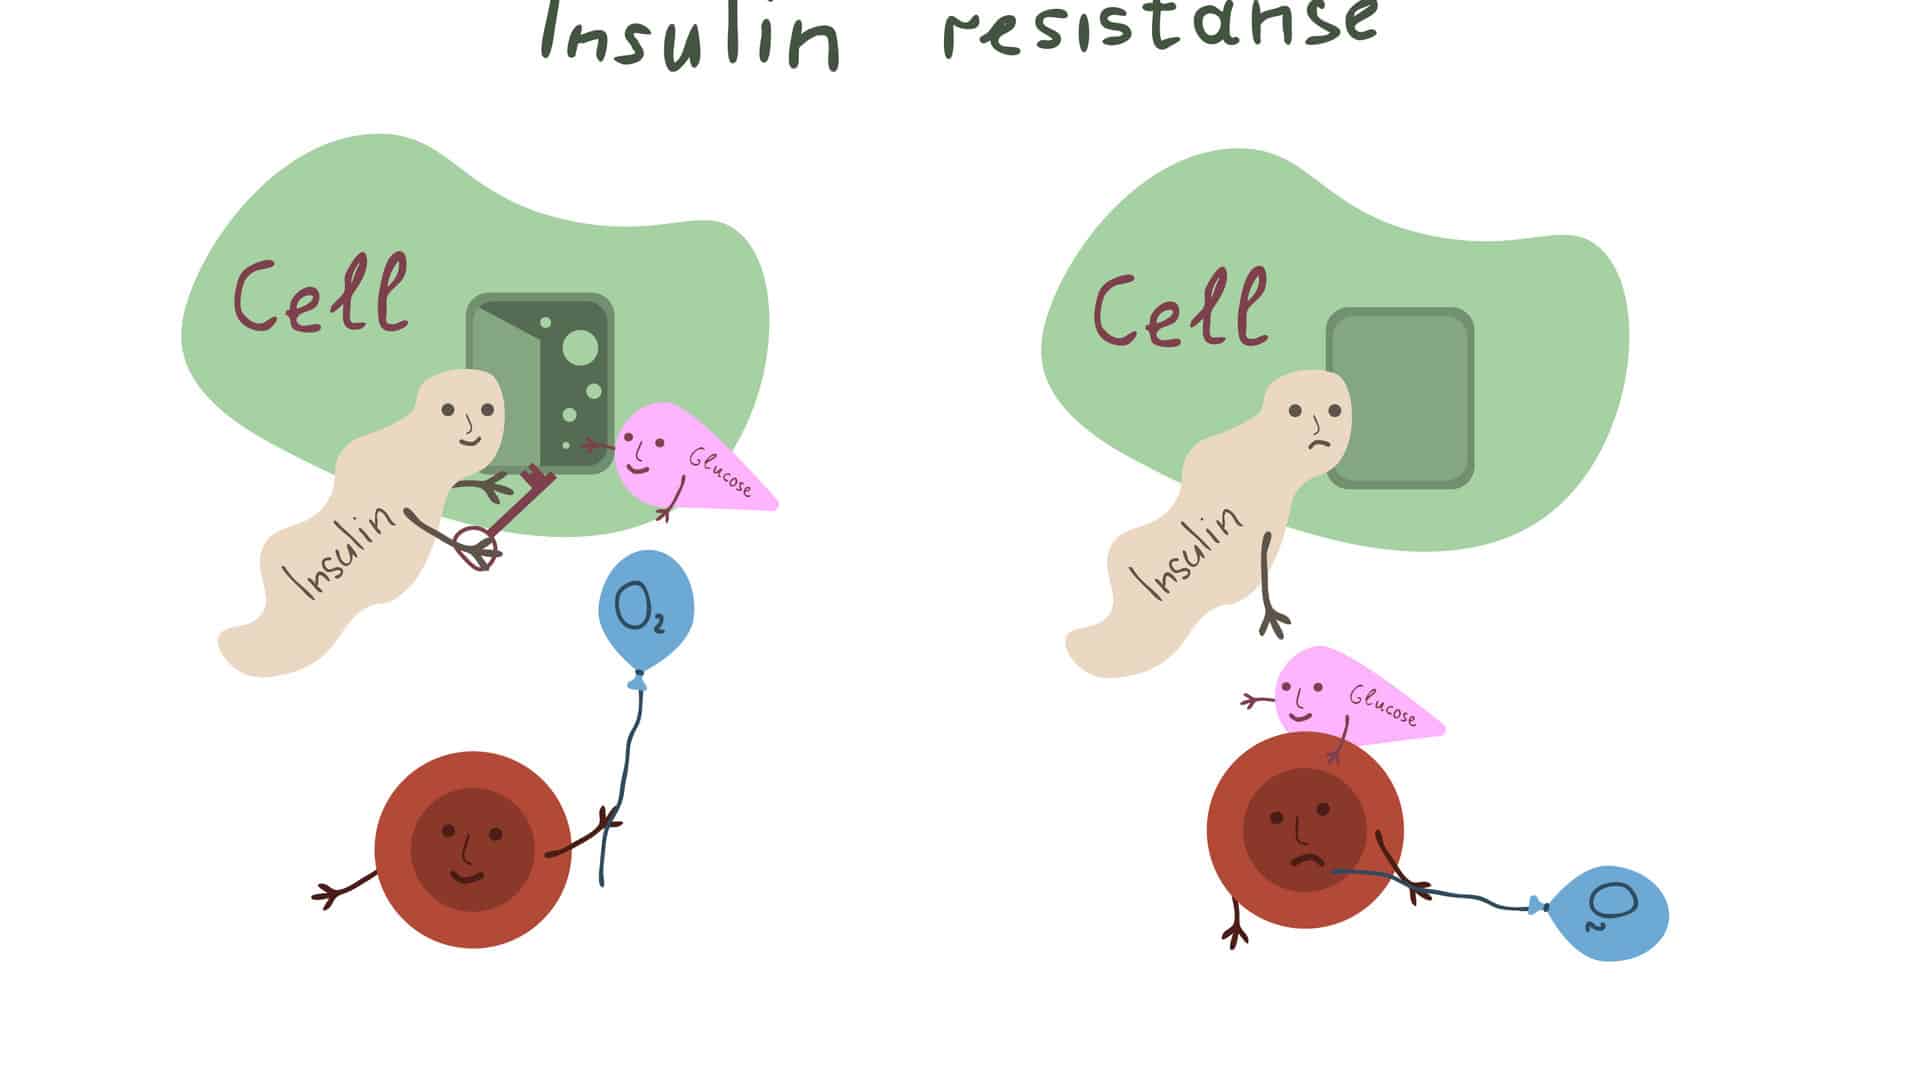 Die Grafik zeigt, wie die Zelle bei einer Insulinresistenz nicht mehr auf das wichtige Hormon reagiert. Die Zelle bleibt öffnet sich nicht mehr für die lebenswichtige Glucose und der Zucker bleibt im Blut.